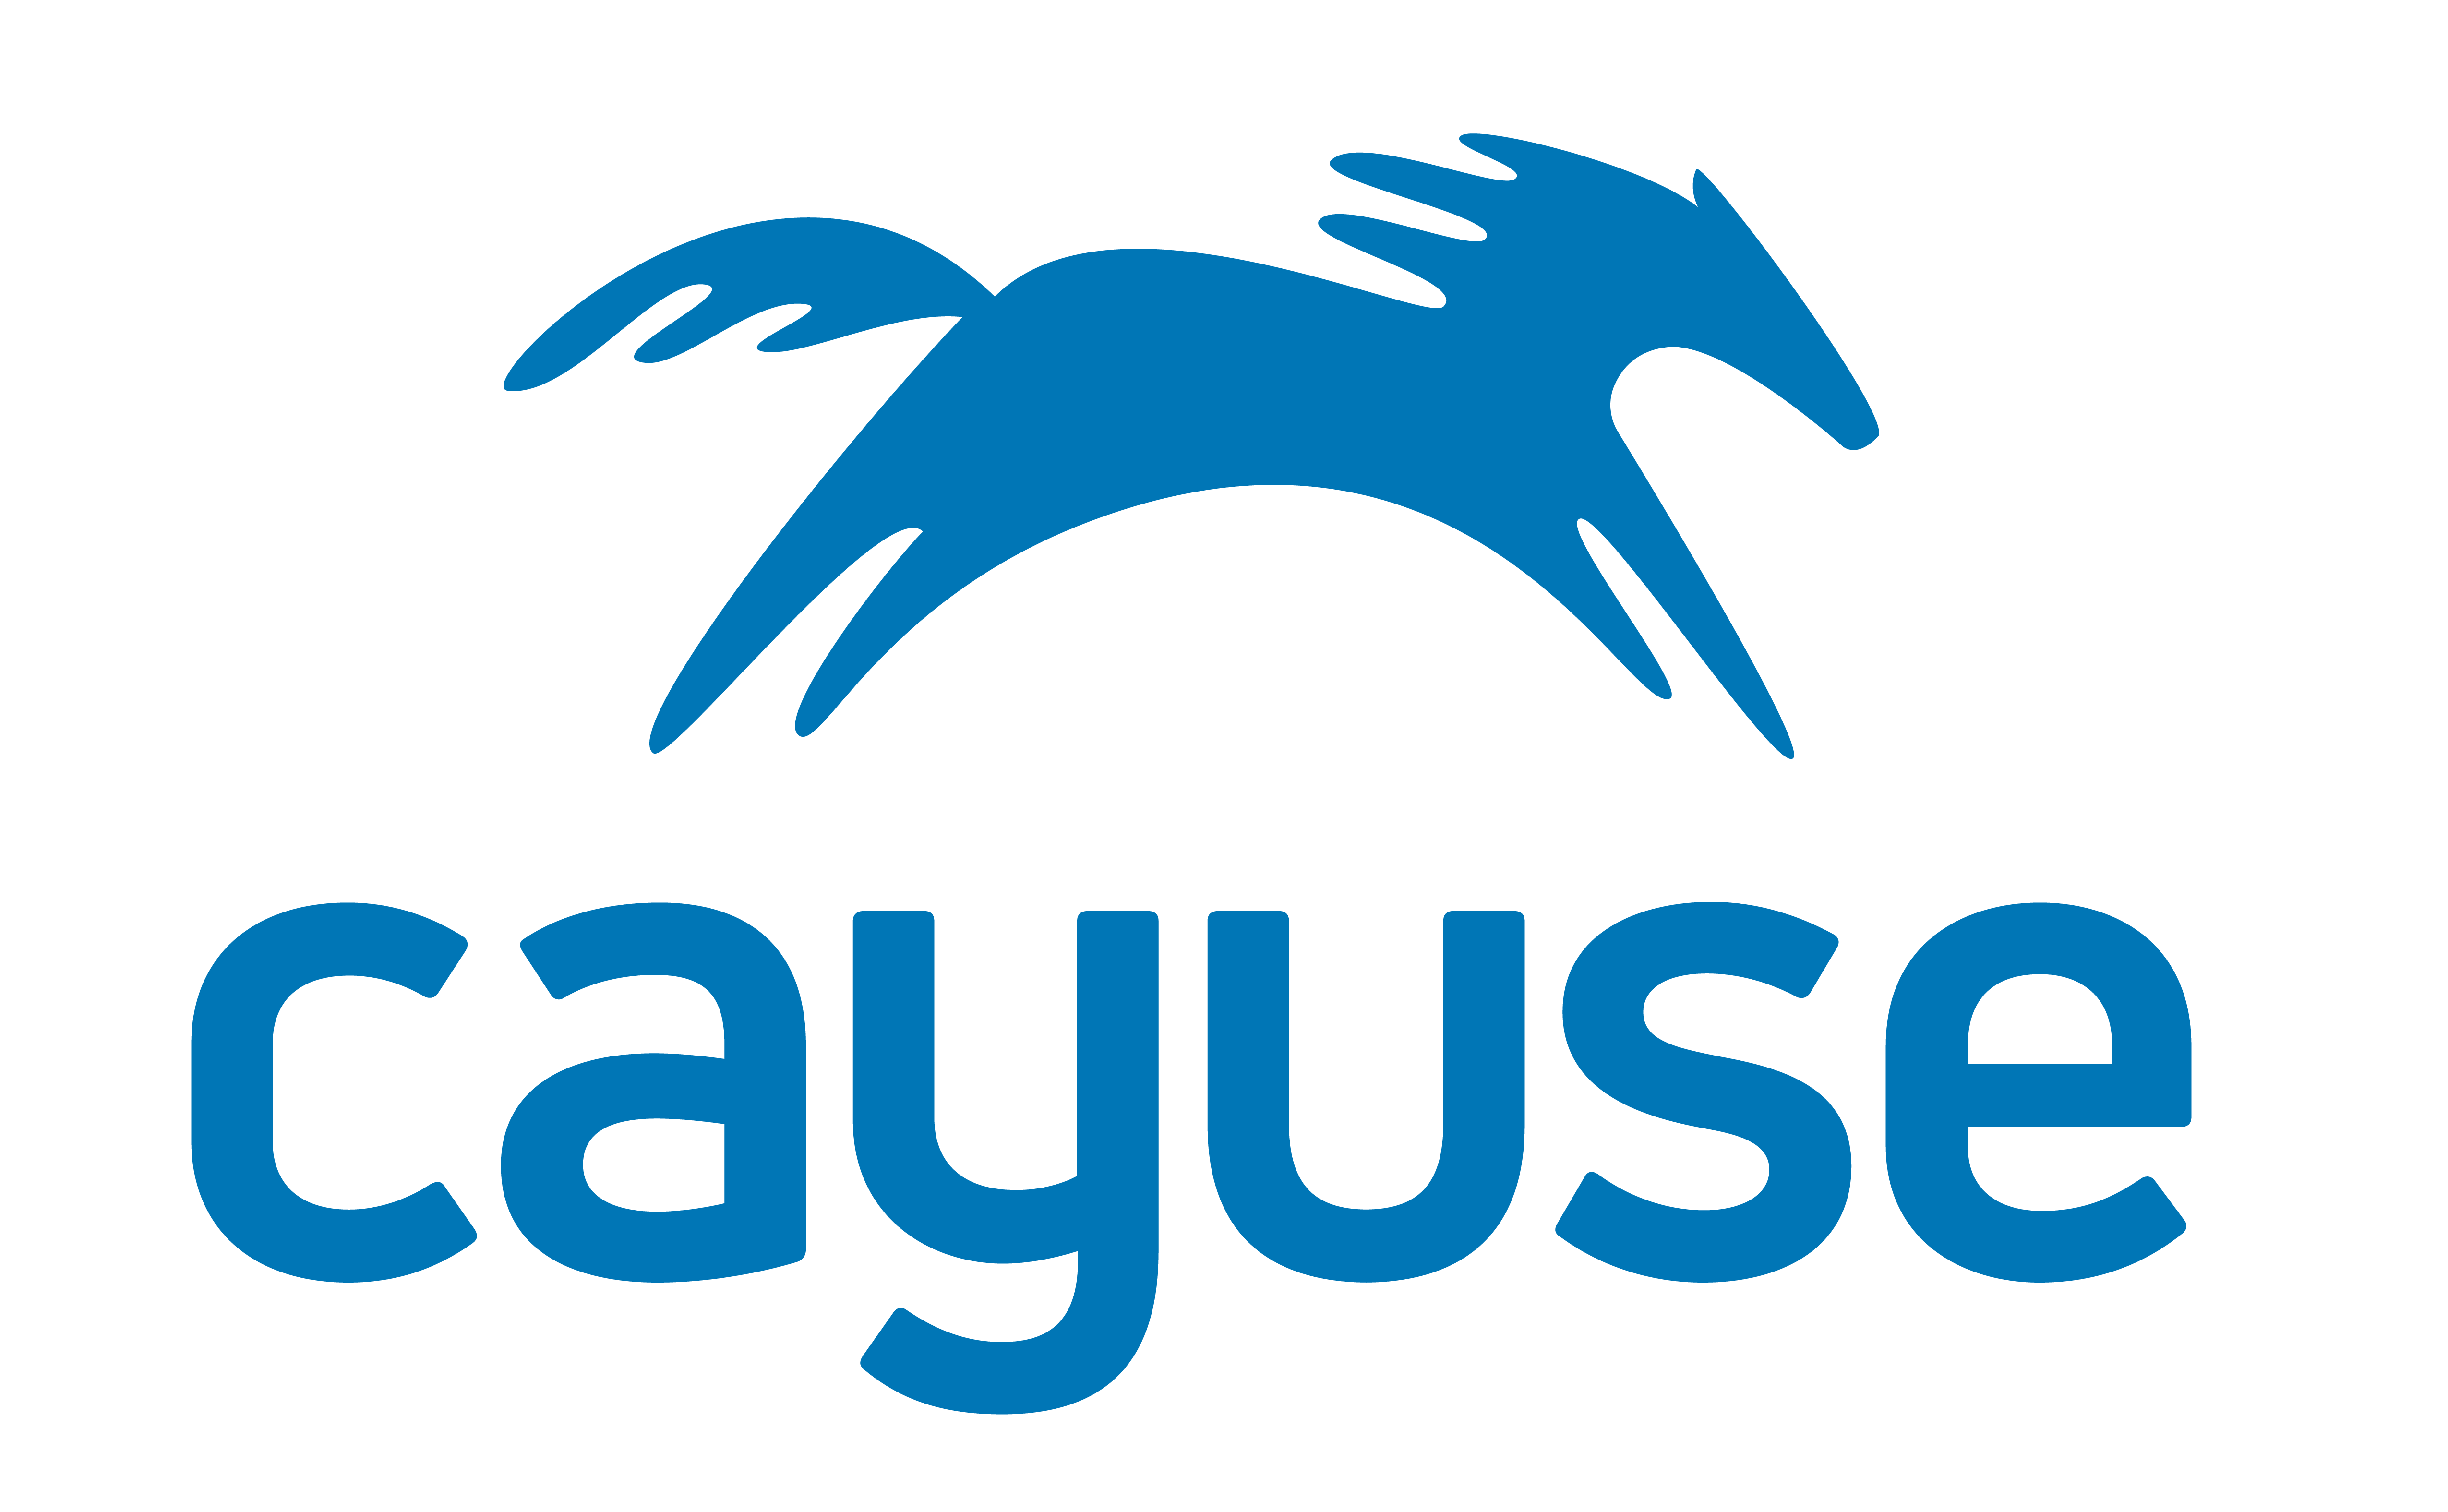 Celebrating Cayuse’s